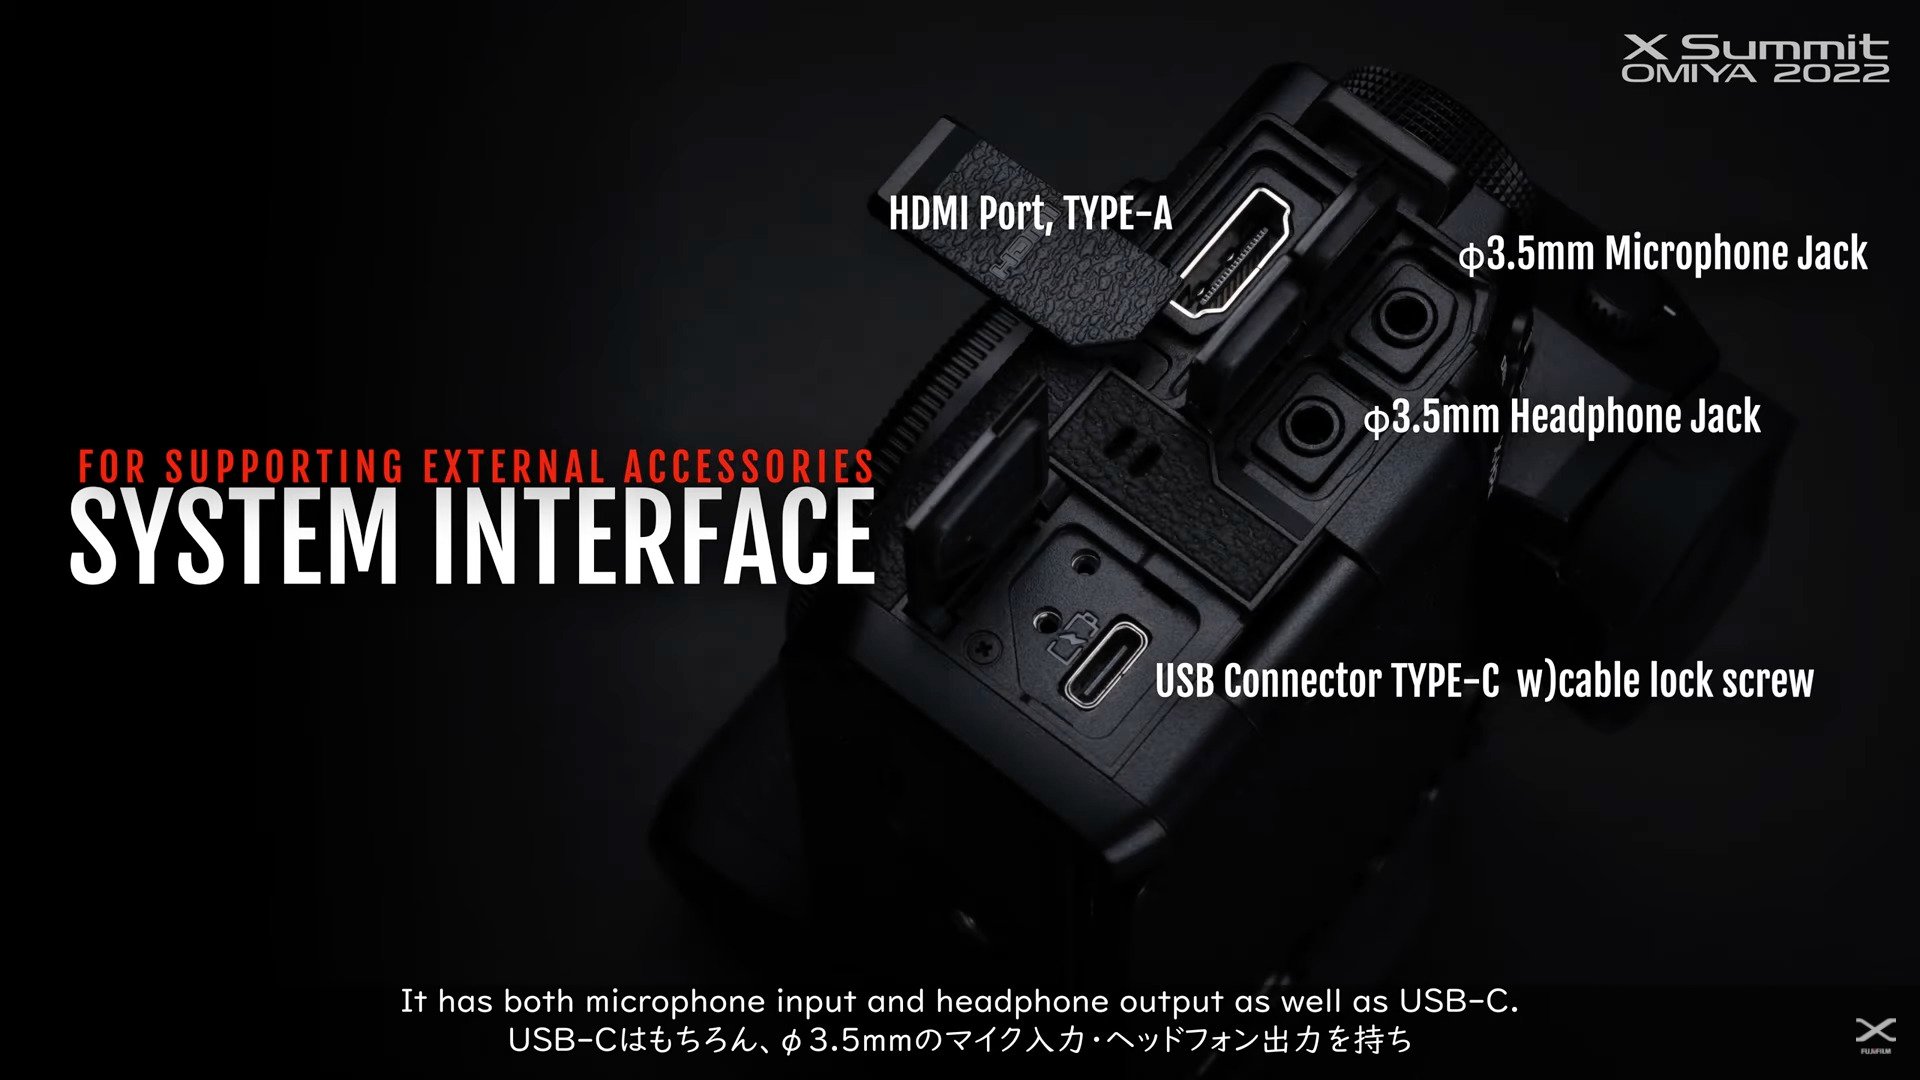 เปิดตัว FUJIFILM X-H2S มิเรอร์เลส APS-C Hybrid สุดทั้งภาพนิ่งและวิดีโอ 26MP ยิงรัว 40fps วิดีโอ 6K30P